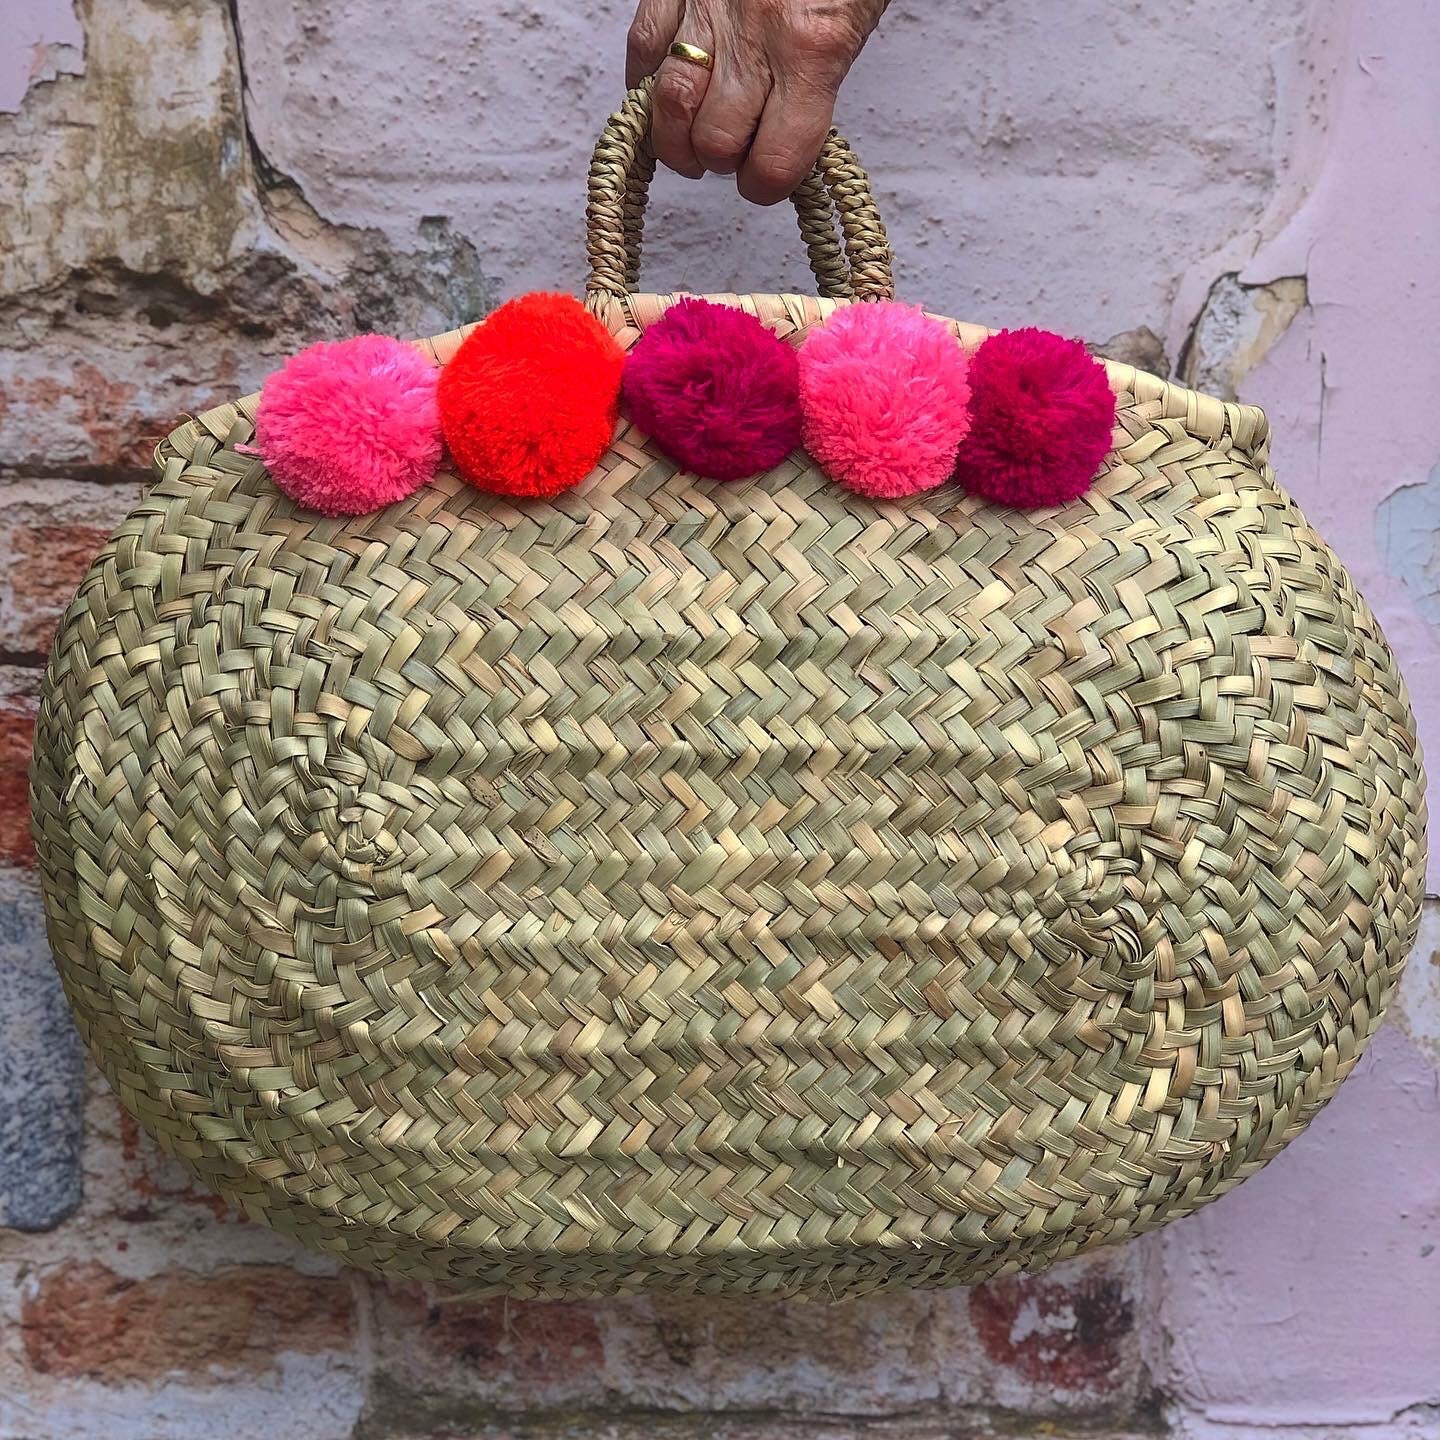 Pompom seagrass shopping handbag bag storage basket grey pink | Etsy